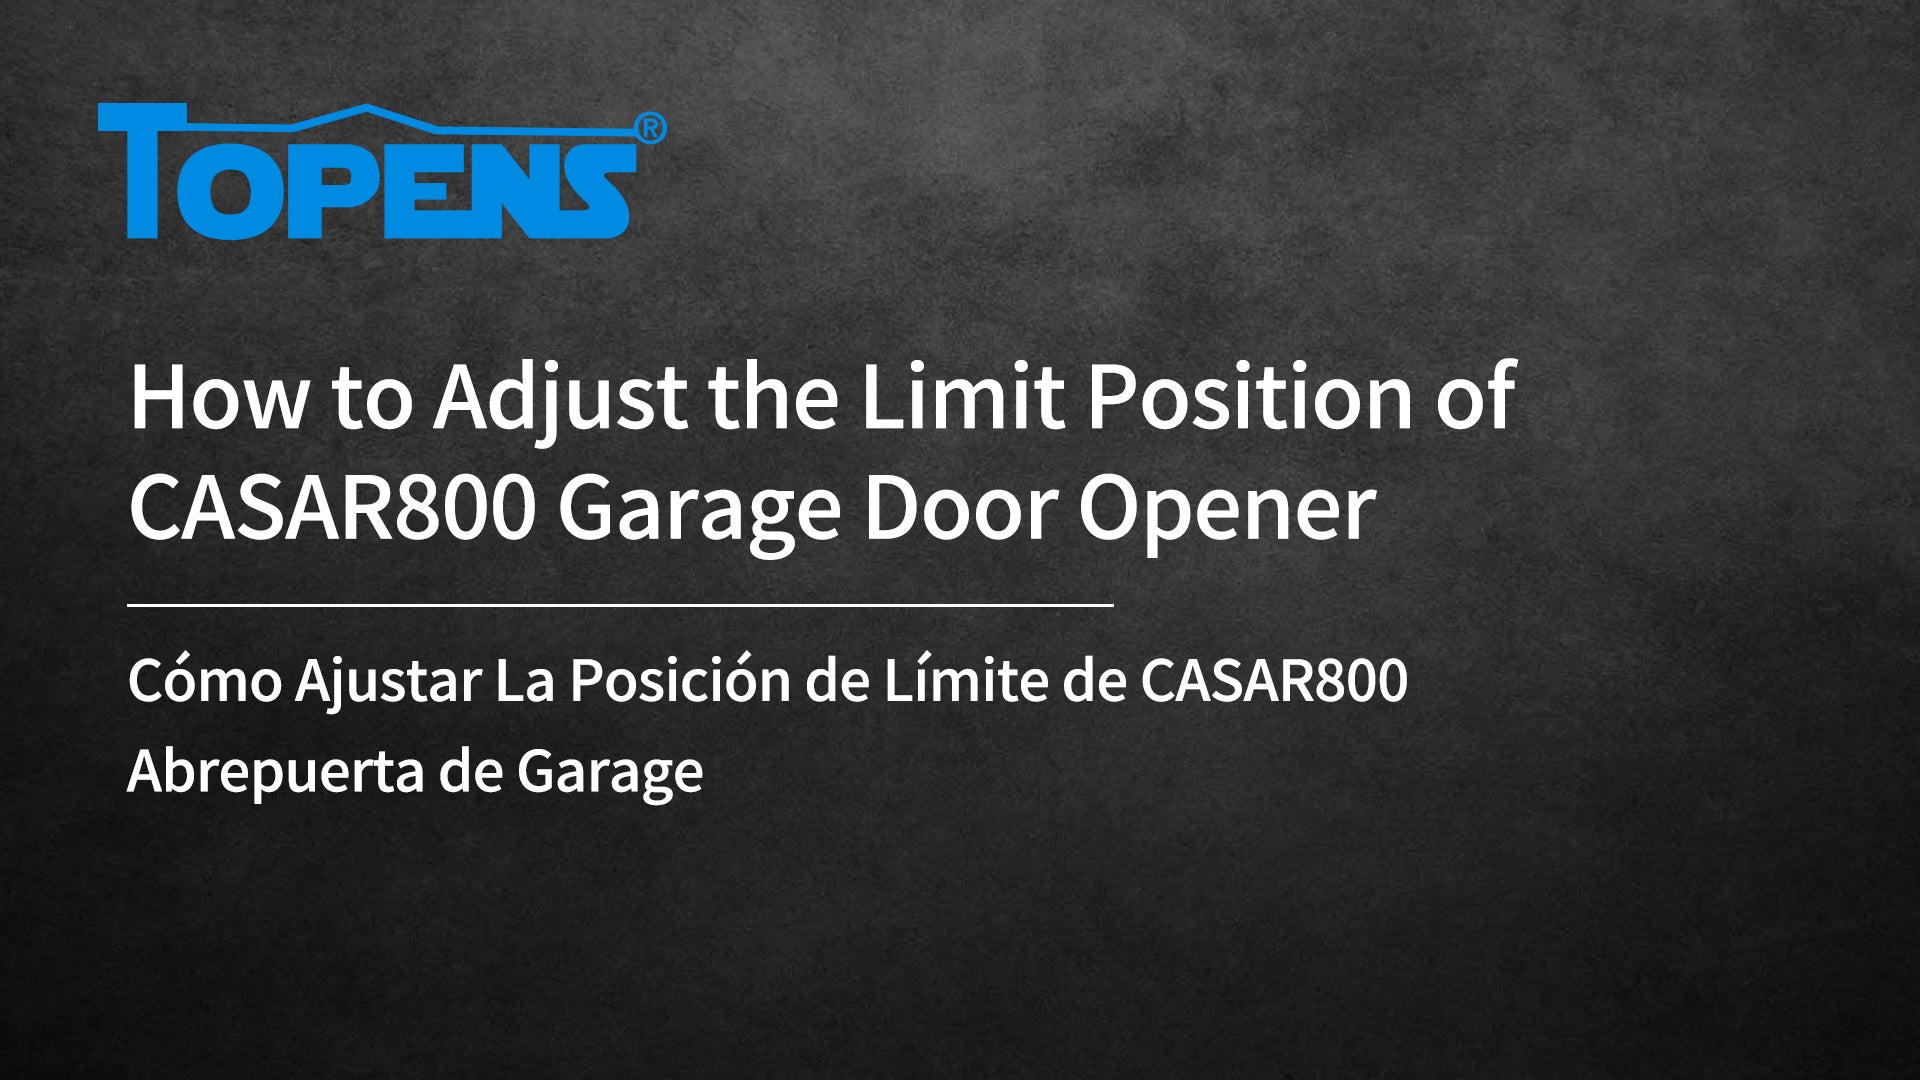 How to Adjust the Limit Position of CASAR800 Garage Door Opener